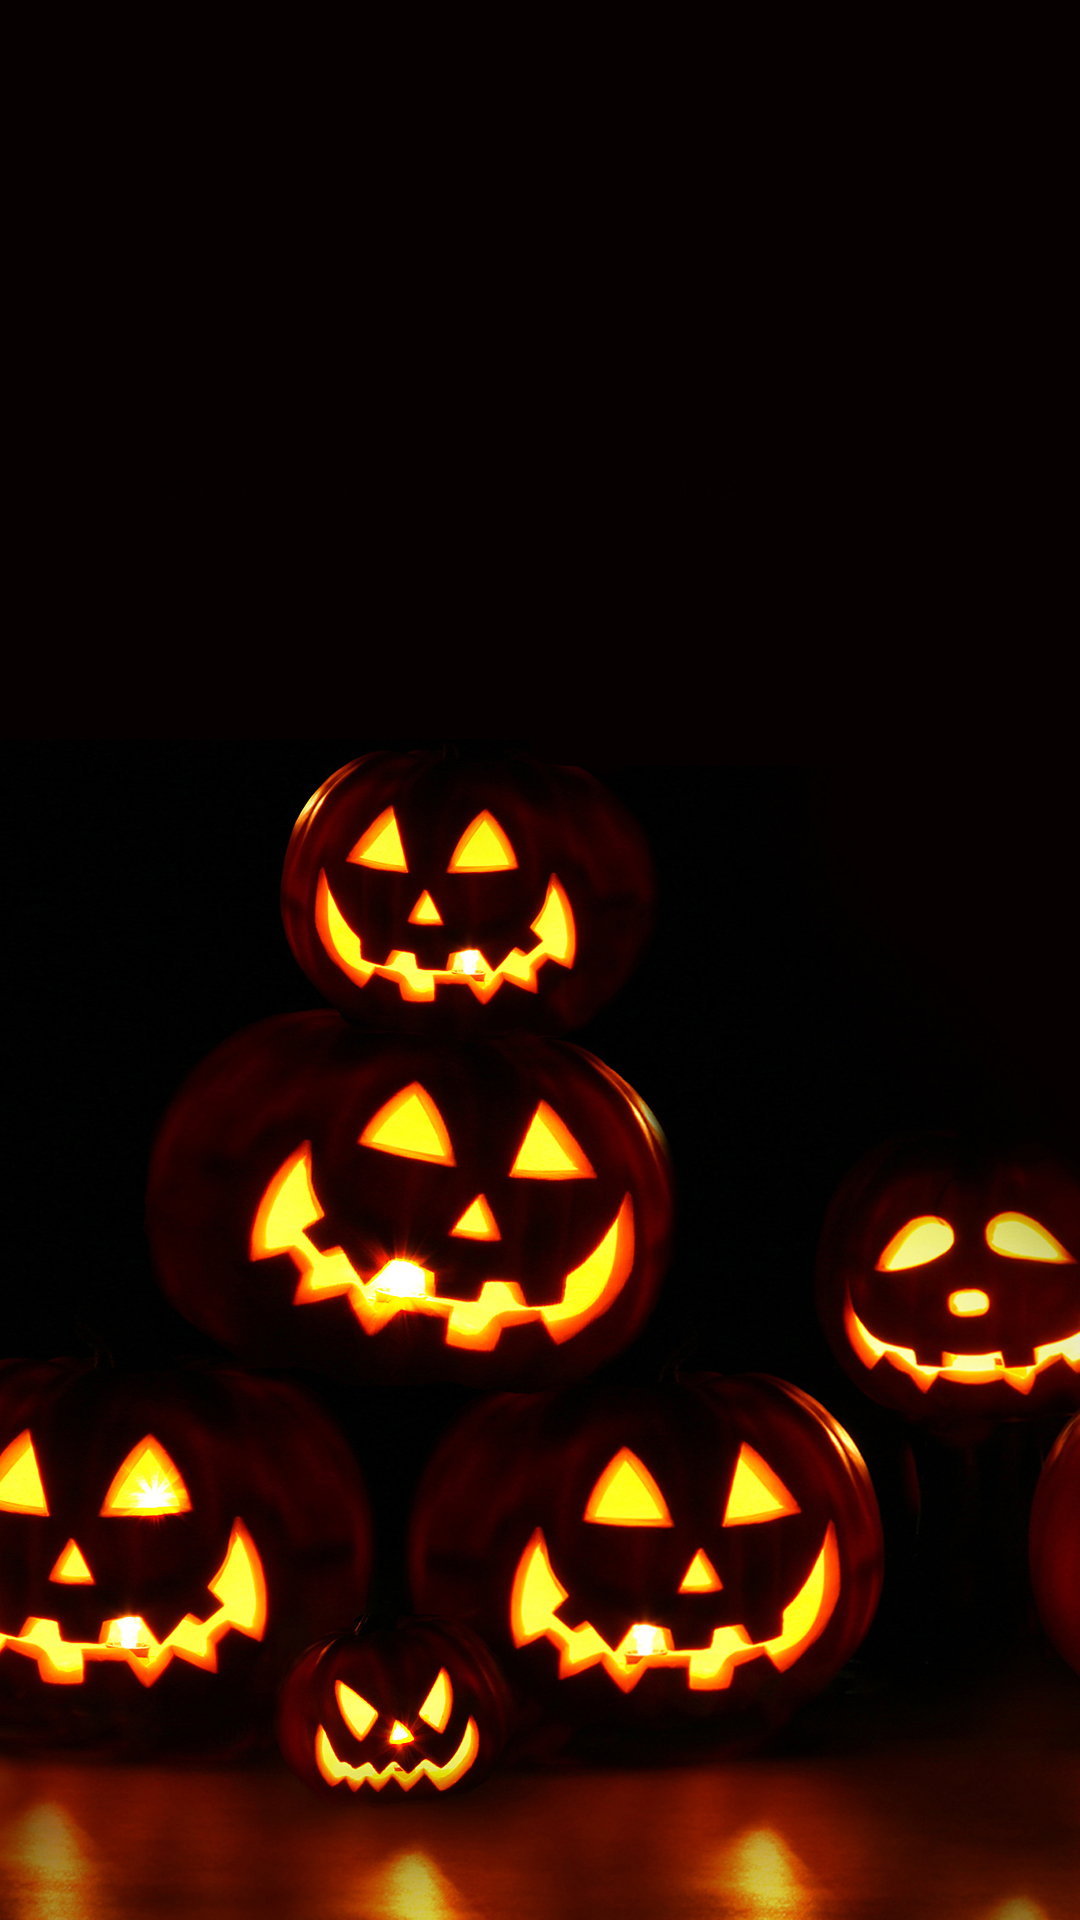 Halloween iPhone Backgrounds  PixelsTalk.Net